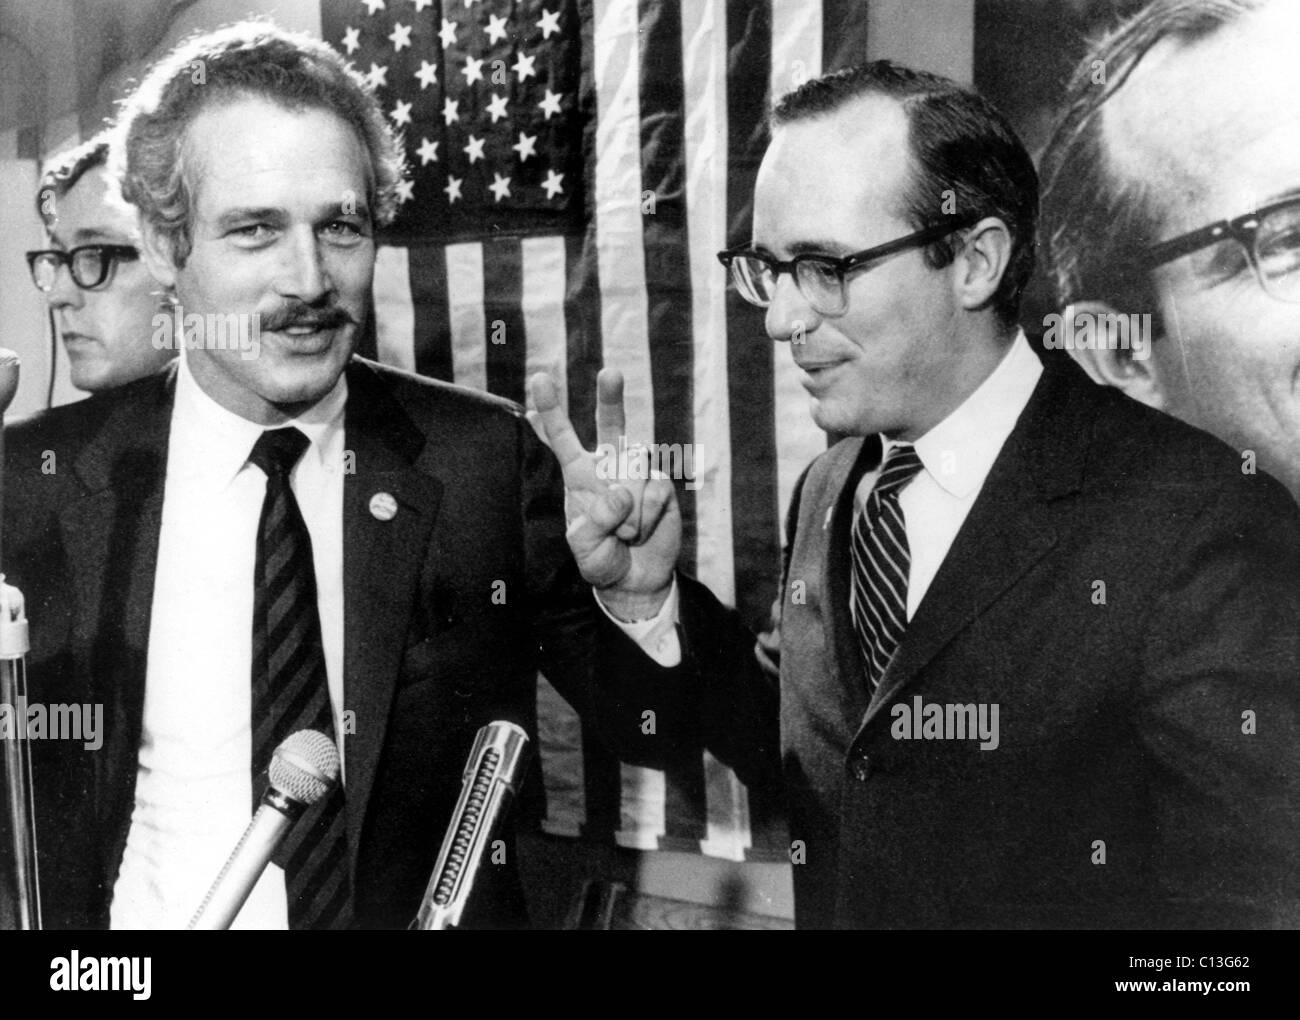 Paul Newman et Joseph Duffy Duffy pendant la campagne marketing pour le Sénat, Texas, novembre, 1969 Banque D'Images